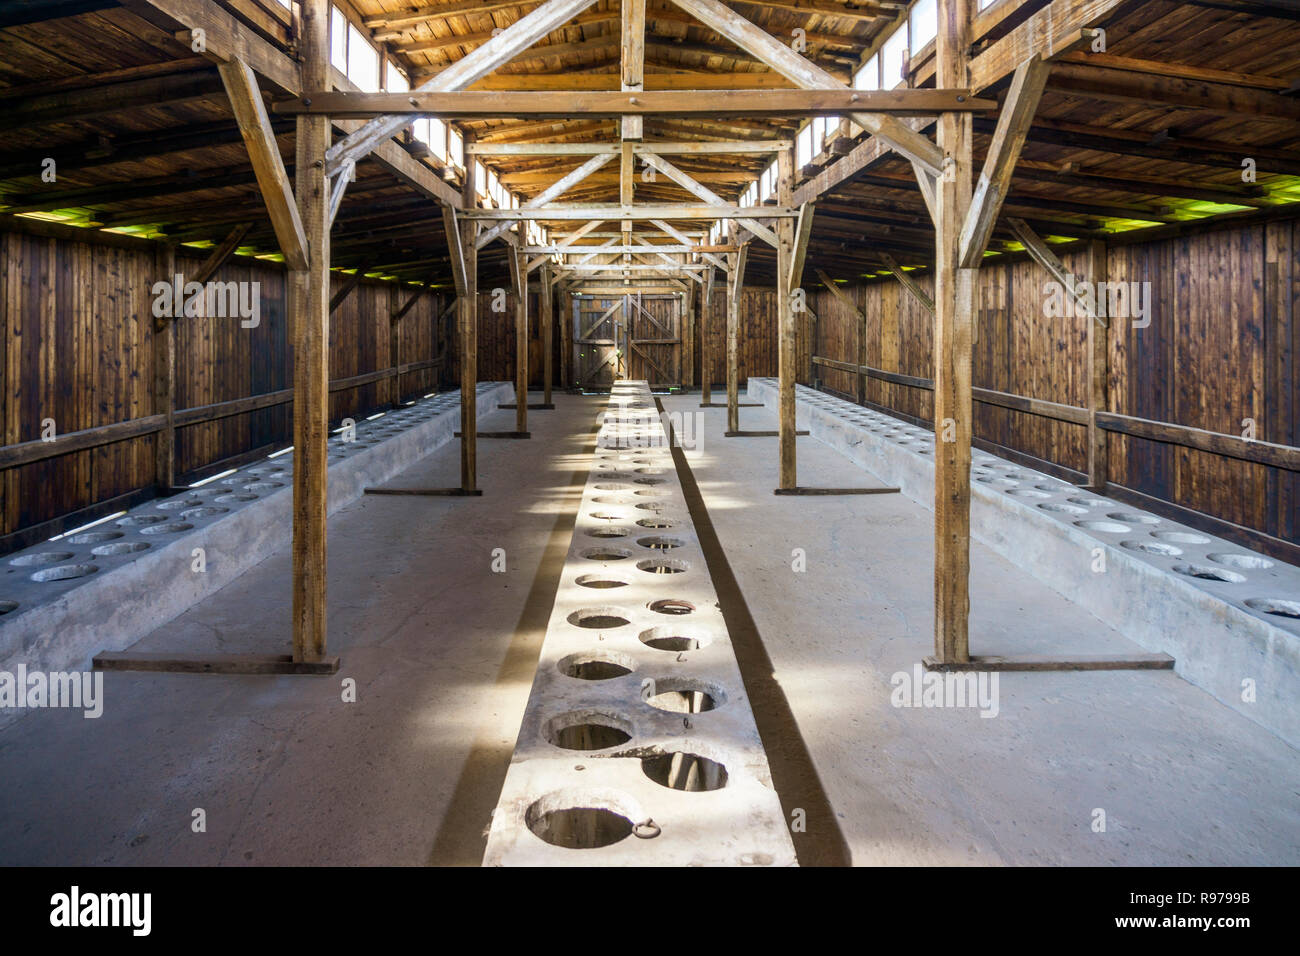 Intérieur de la caserne d'habitation à Auschwitz Birkenau Museum anciennement utilisé comme camp de concentration Allemand, Pologne Banque D'Images